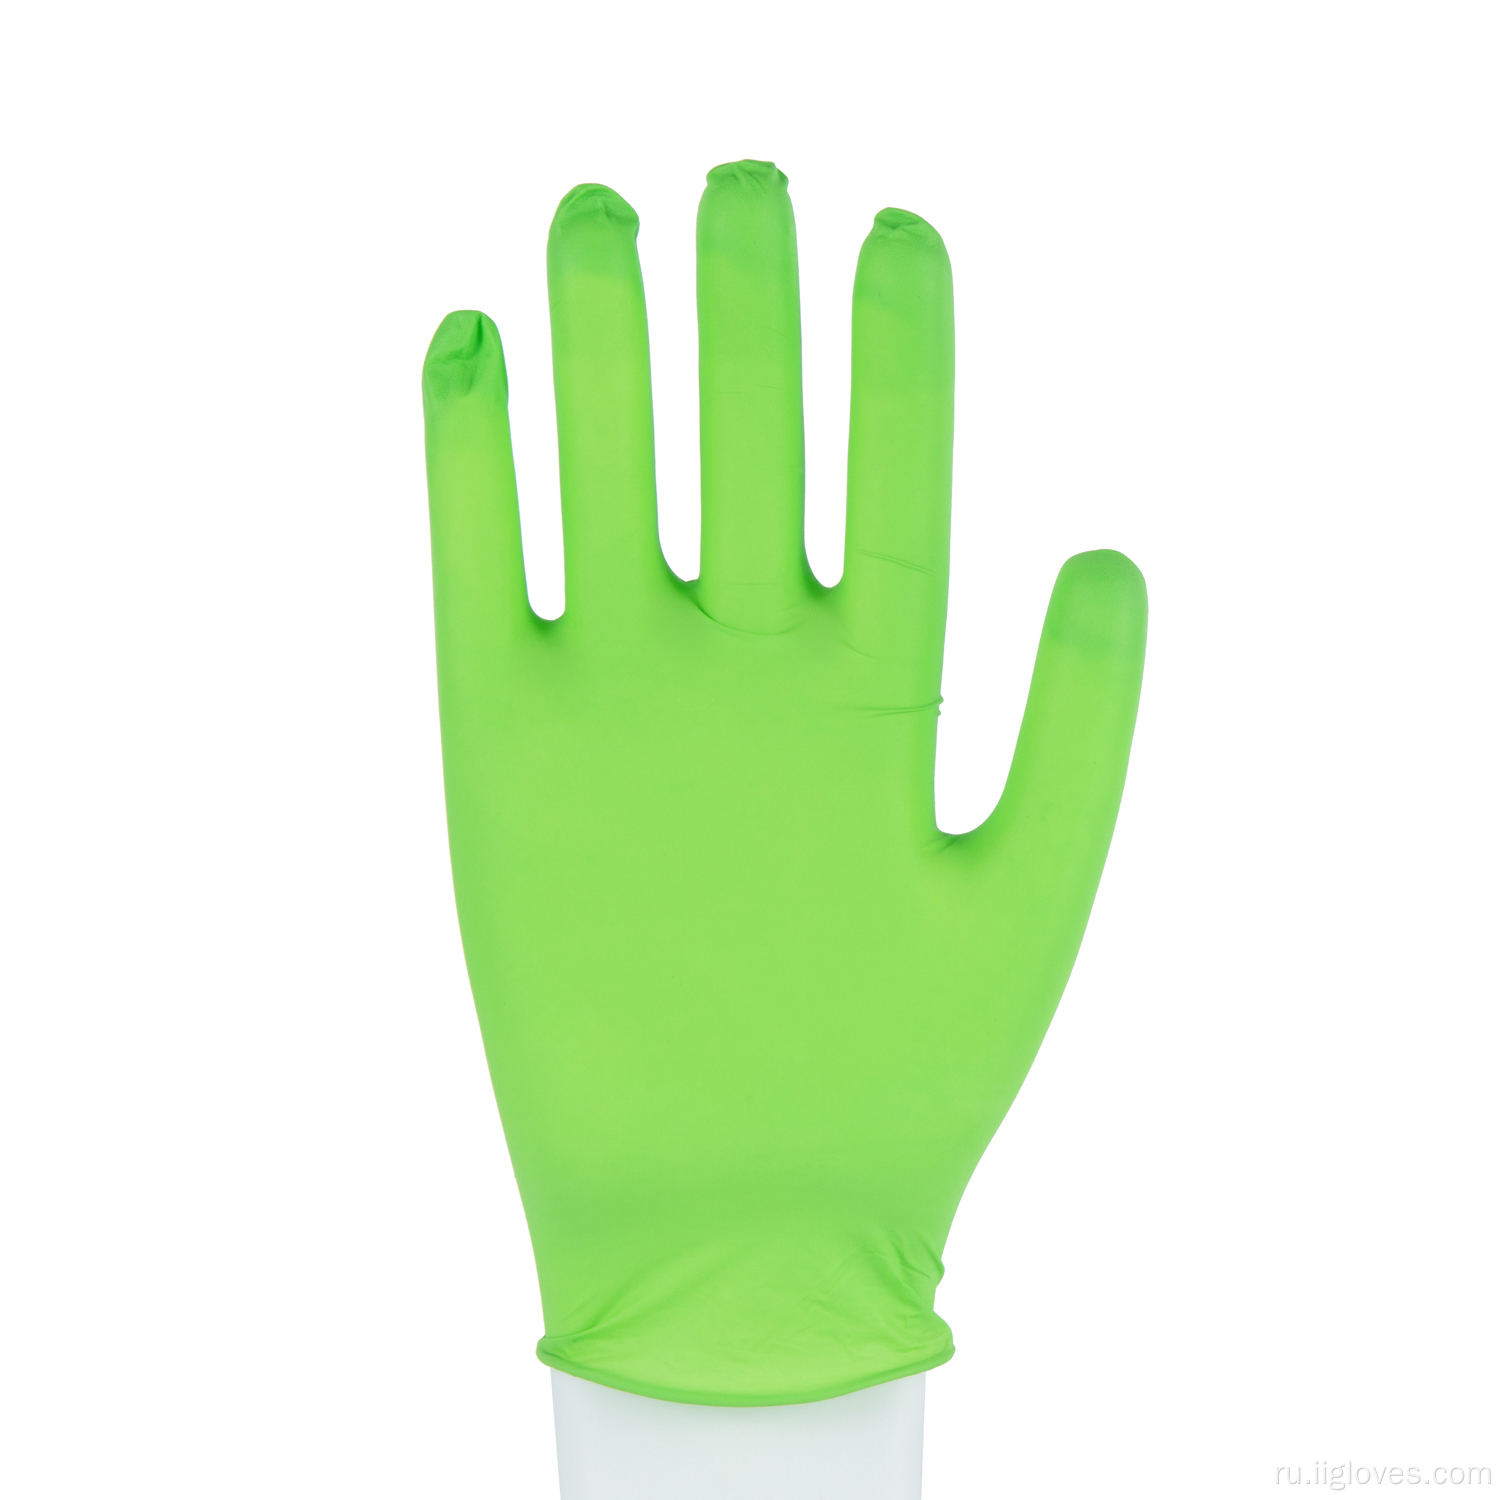 Салон красоты на заказ порошок бесплатные зеленые нитриловые перчатки